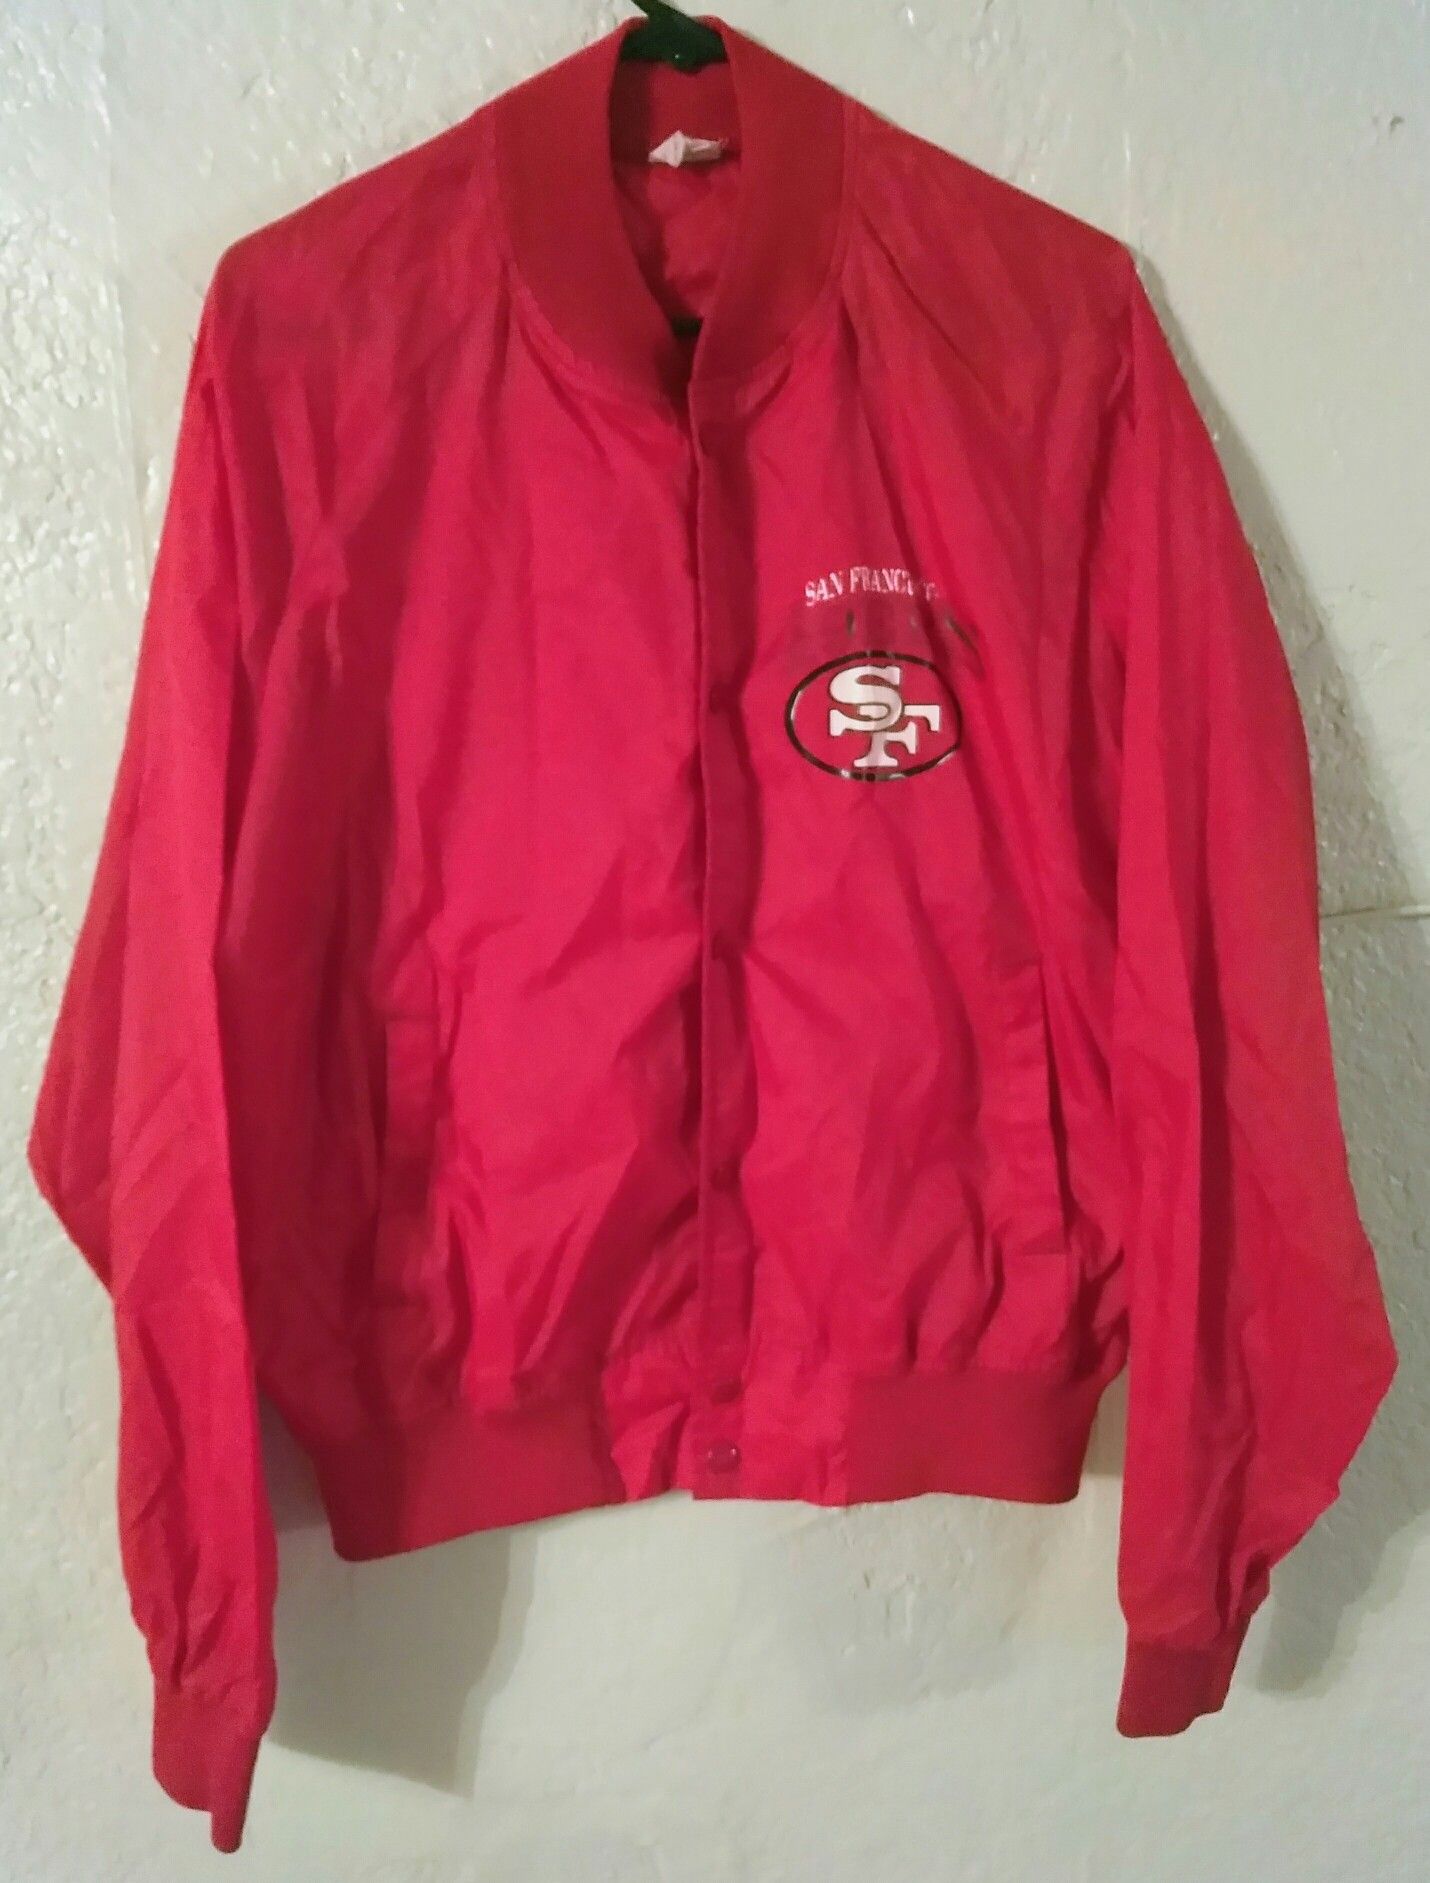 Chalk Line SF 49ers Windbreaker jacket